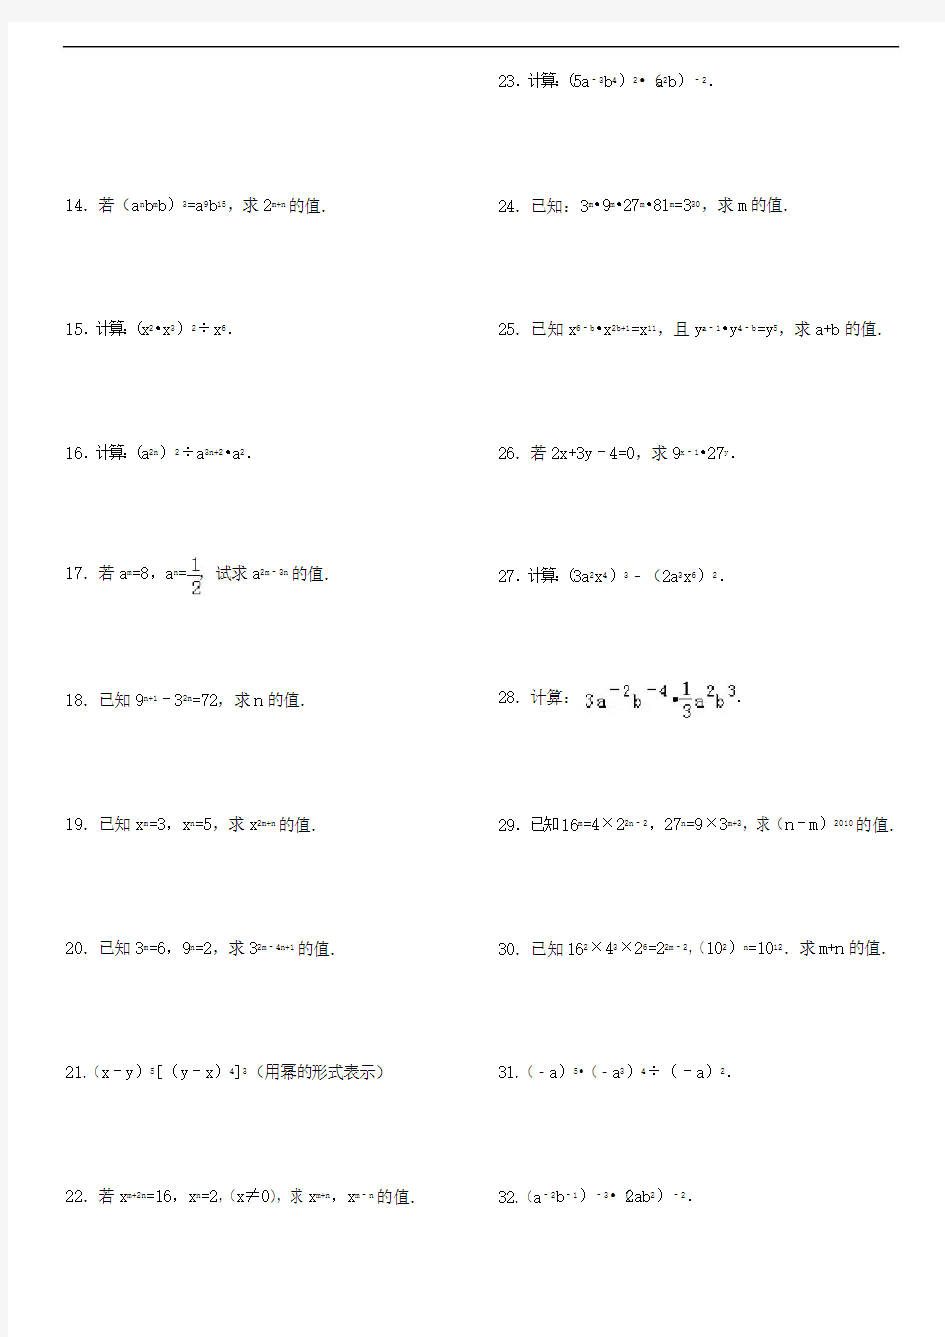 (634)幂的运算综合专项练习50题(有答案过程)ok